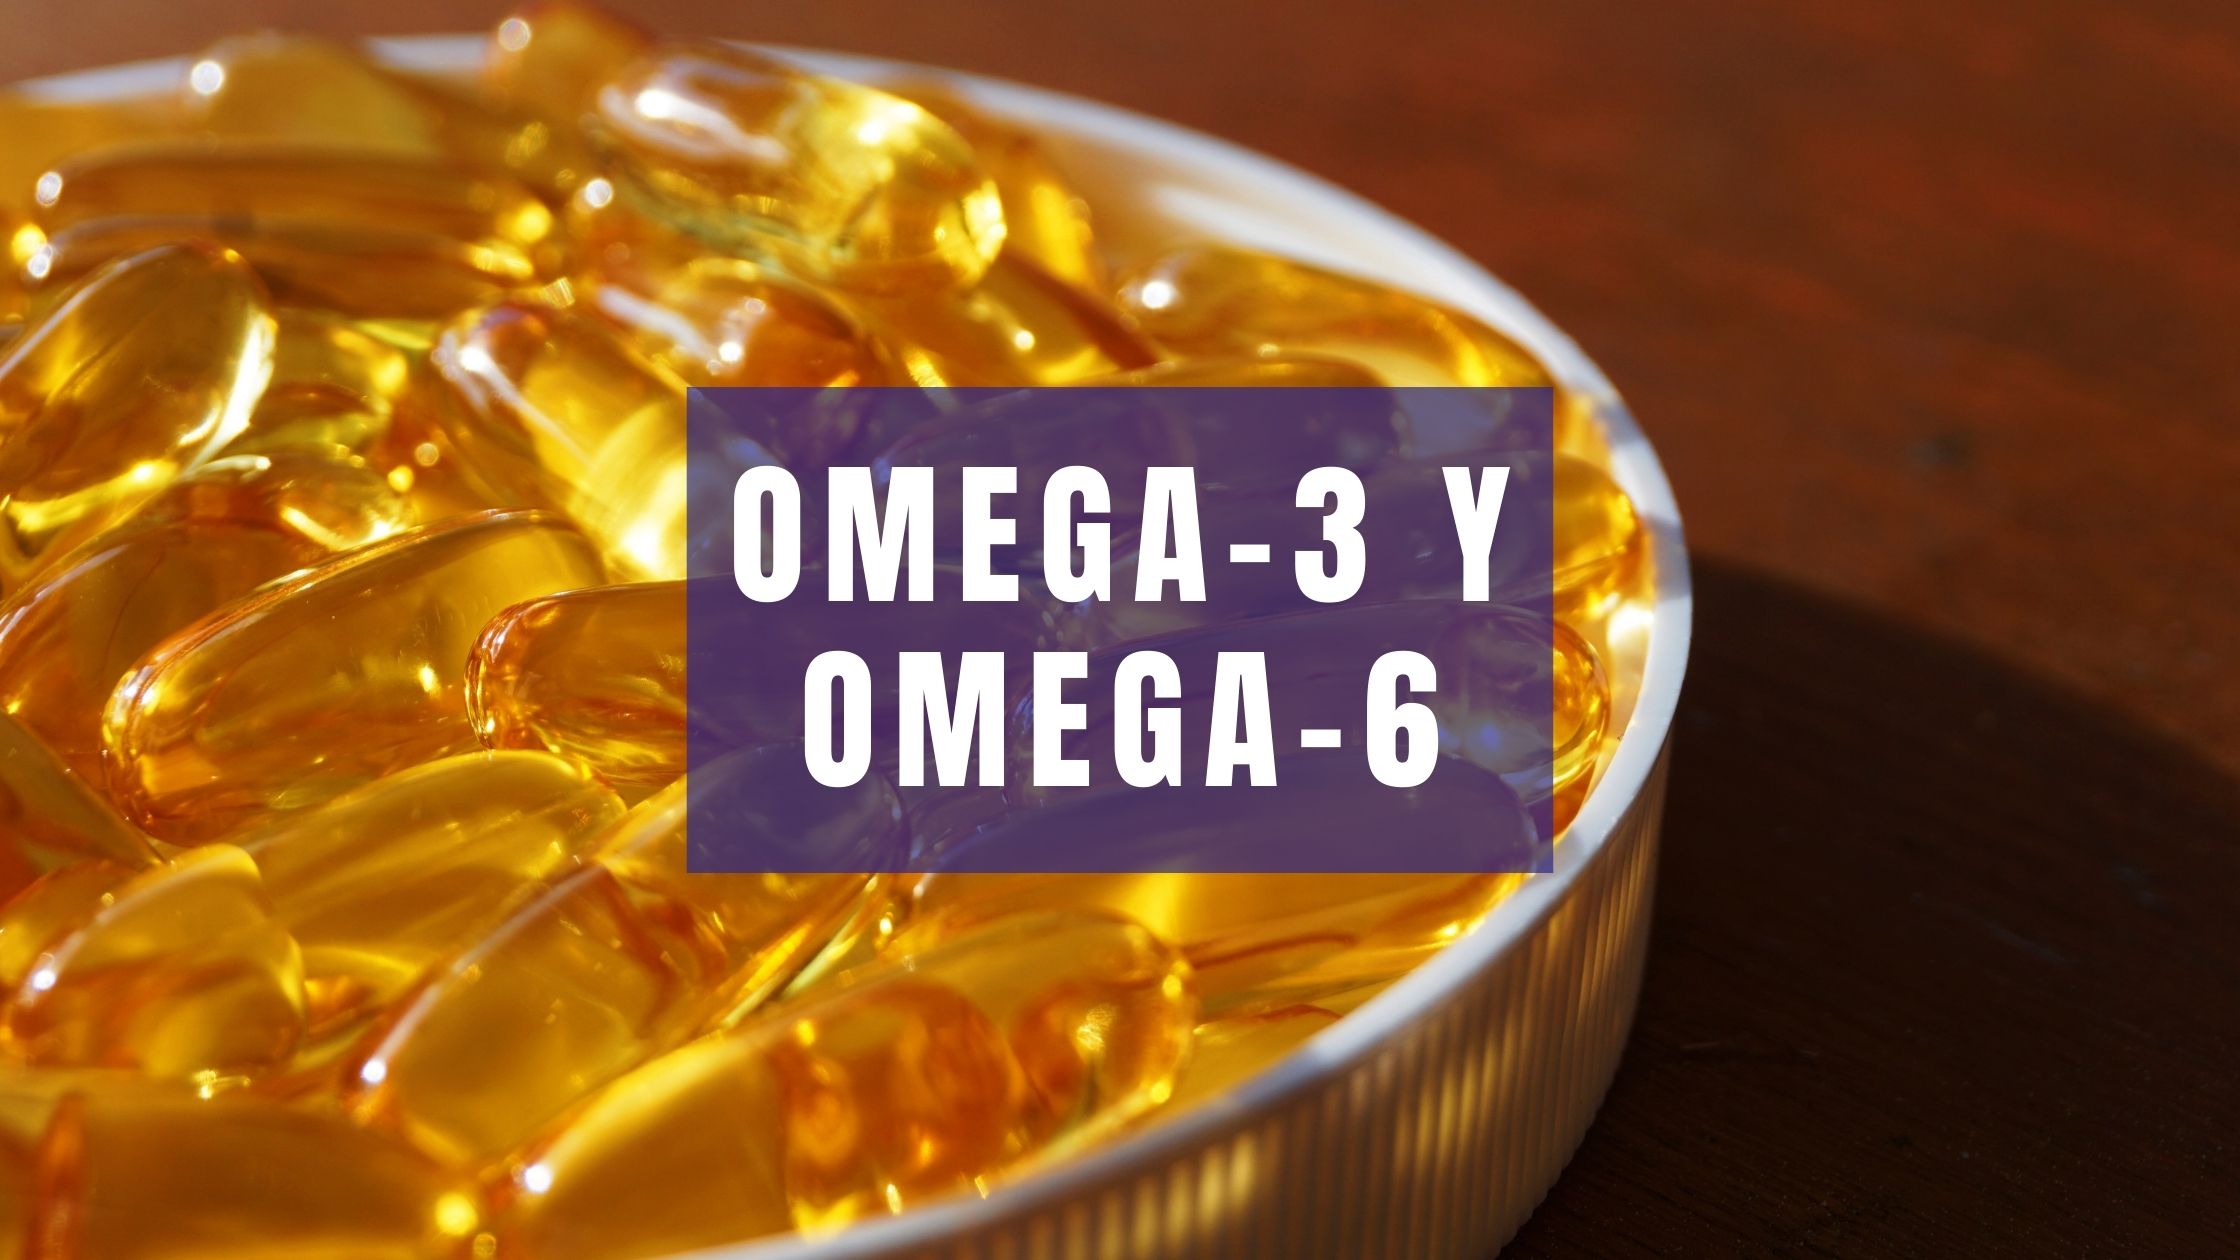 Omega-3 Omega-6